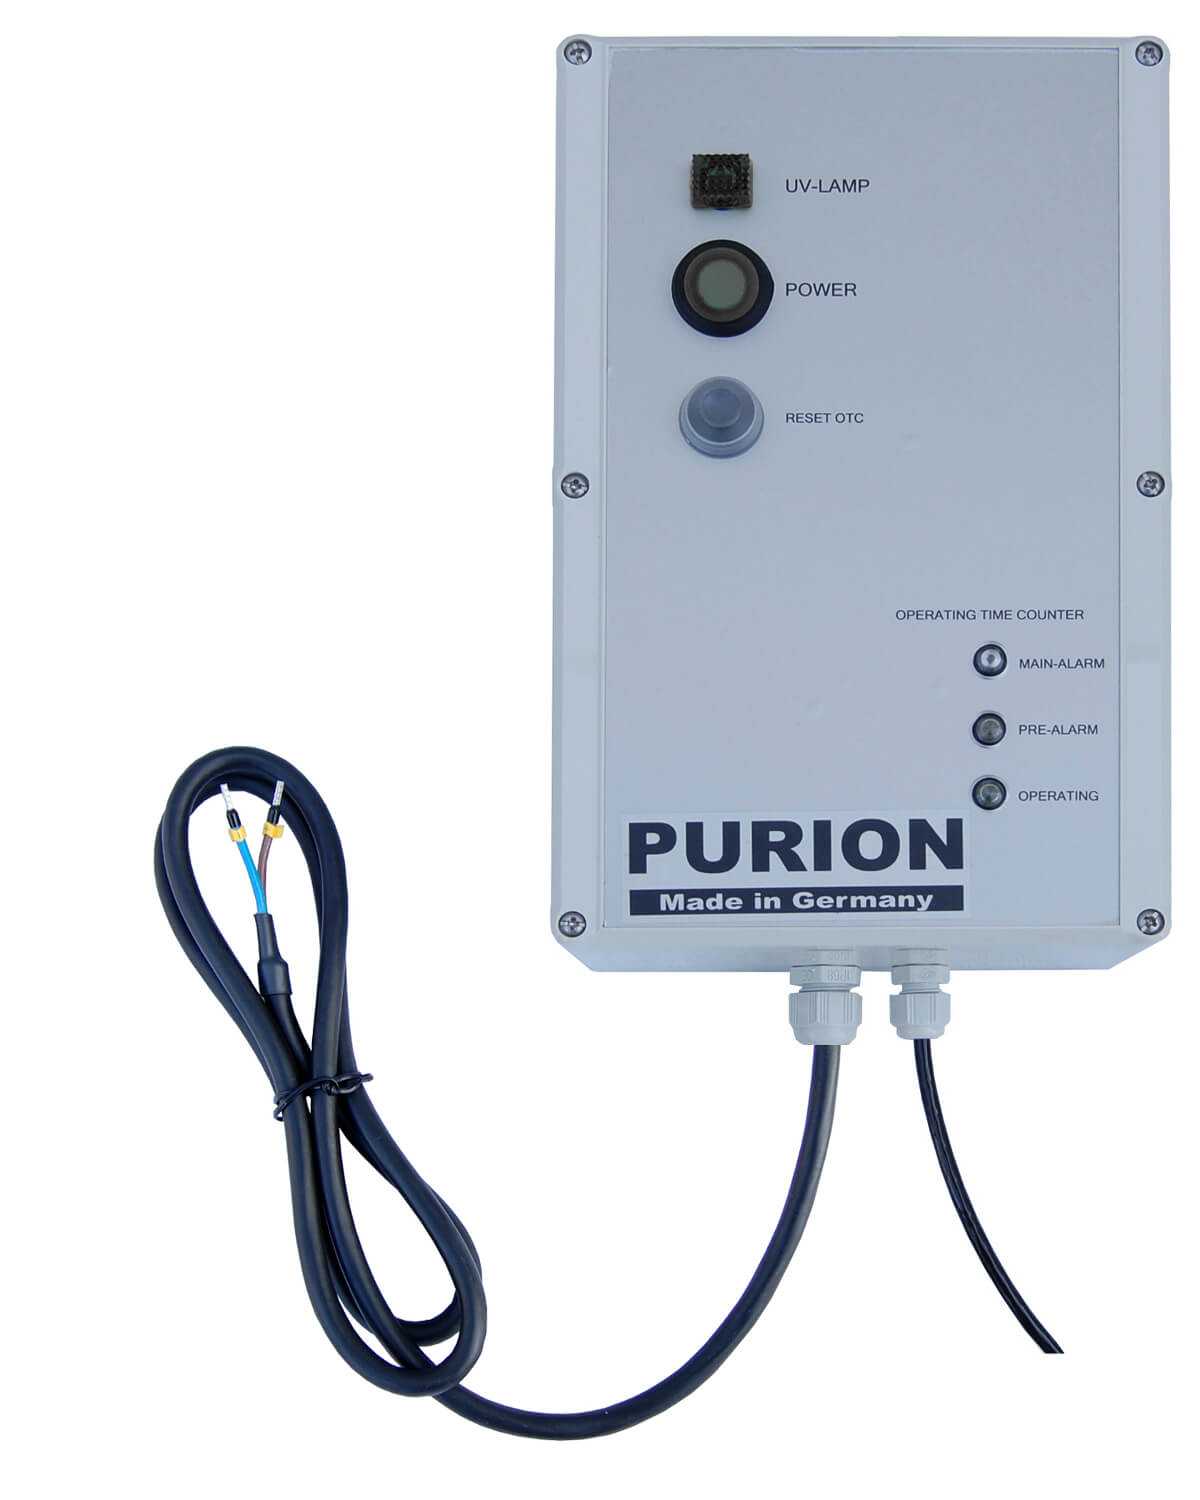 Beschreibung: Das PURION 1000 PRO OTC Plus ist ein Desinfektionsgerät, das mit UV-C-Licht arbeitet. Gemäß den Angaben der PURION GmbH sollte